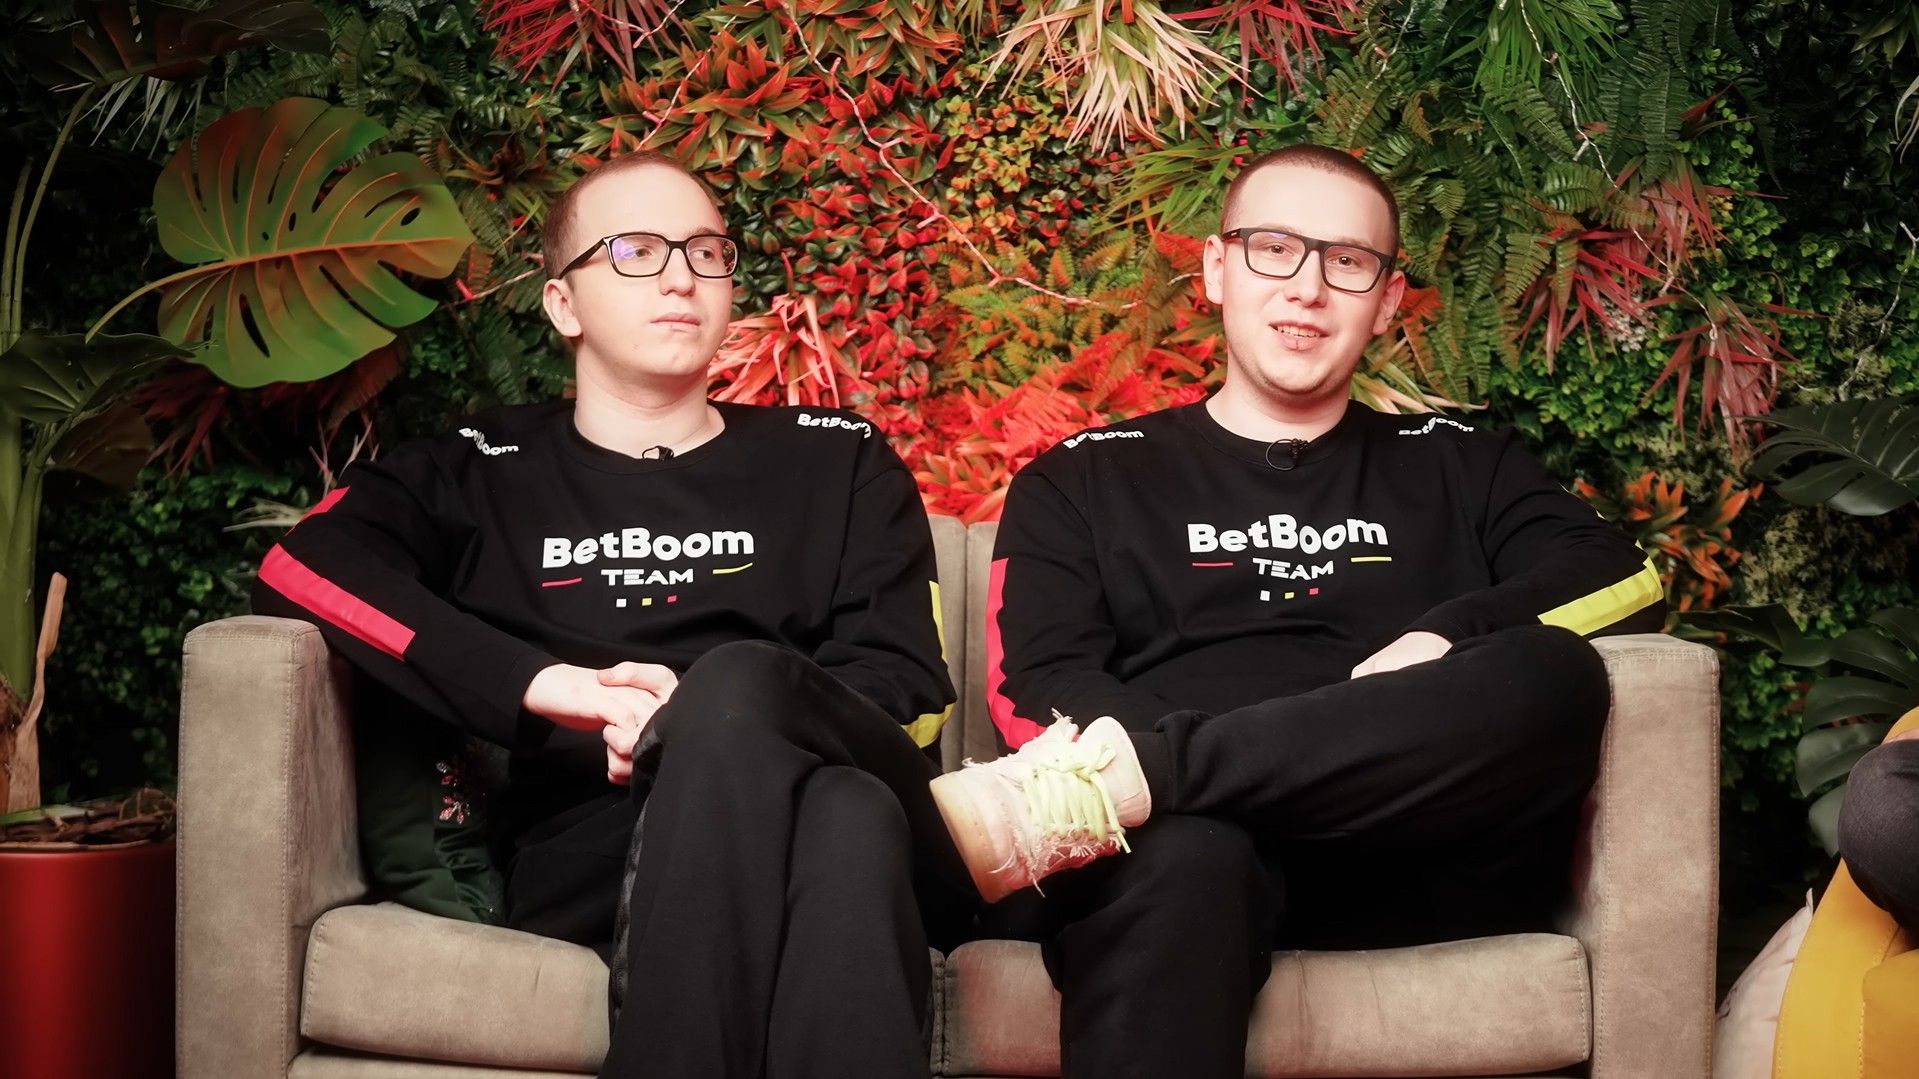 BetBoom Team – MoneyMakers: BetBoom Team начинает подготовку к следующему LAN-турниру